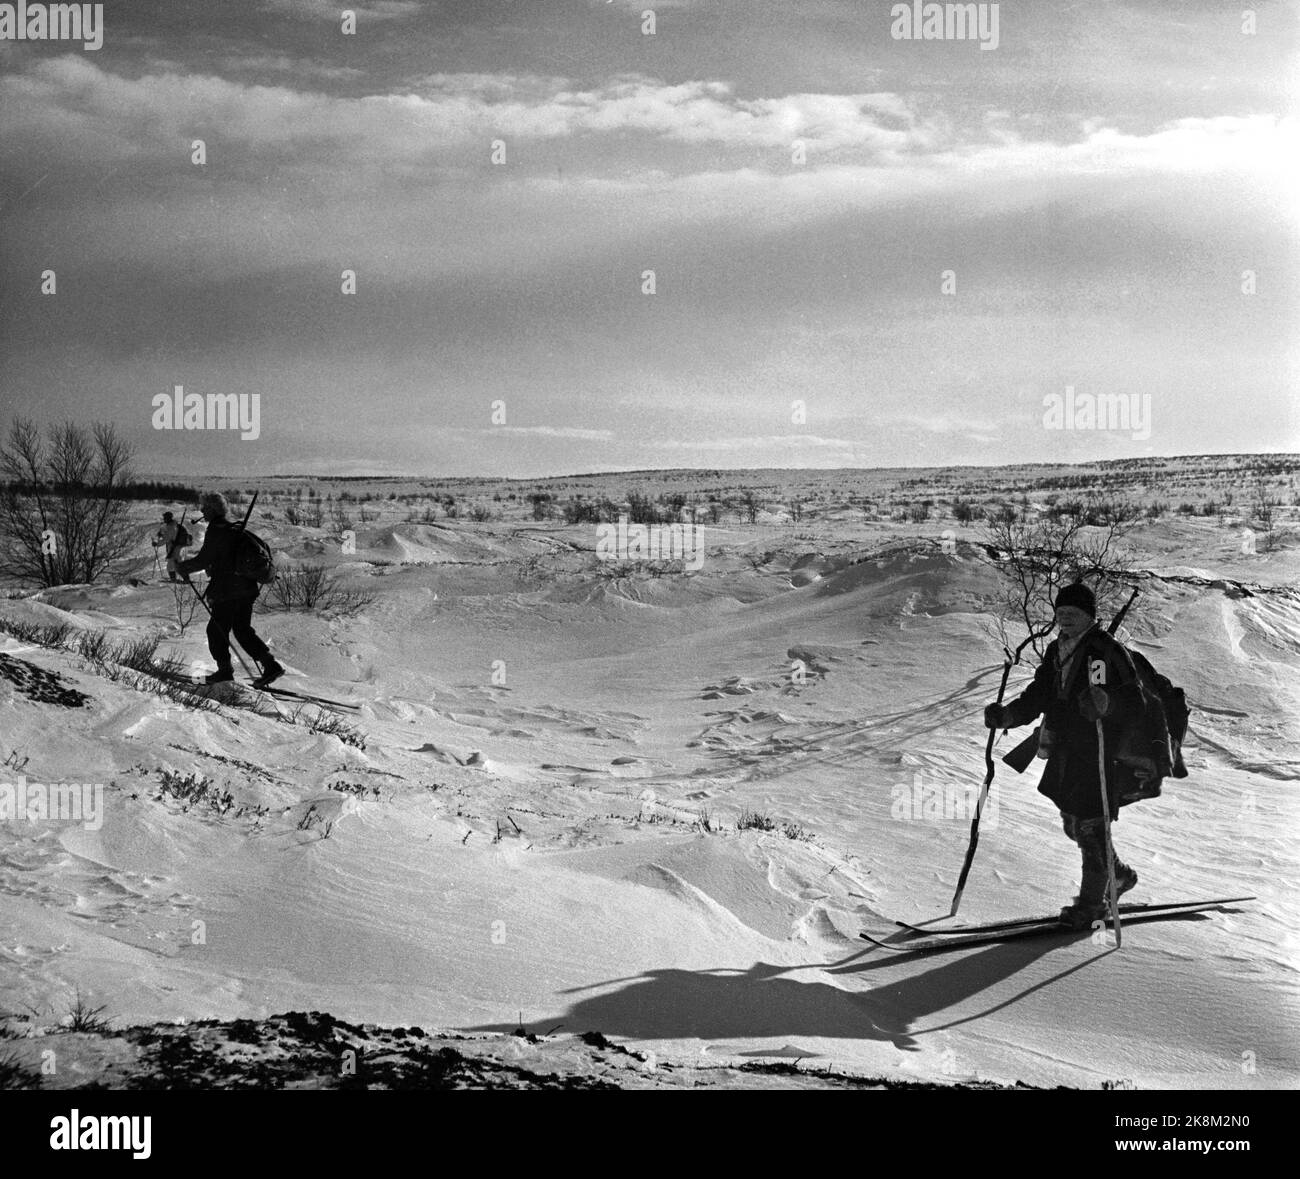 Finnmark à l'hiver 1949. Chasse au loup sur Finnmarksvidda. Le Ministère de l'agriculture a alloué de l'argent à la chasse aux loups à Finnmark après que de grandes troupeaux de rennes aient été endommagés par des loups. L'action a fait appel à des chasseurs locaux et loués, ainsi qu'à des vols et à des wagons de ceinture. Ici, les chasseurs sâmes sur leur chemin pour le ski de Finnmarskvidda, et avec des rods faits maison. Motlight. Photo: Sverre A. Børretzen / actuel / NTB Banque D'Images